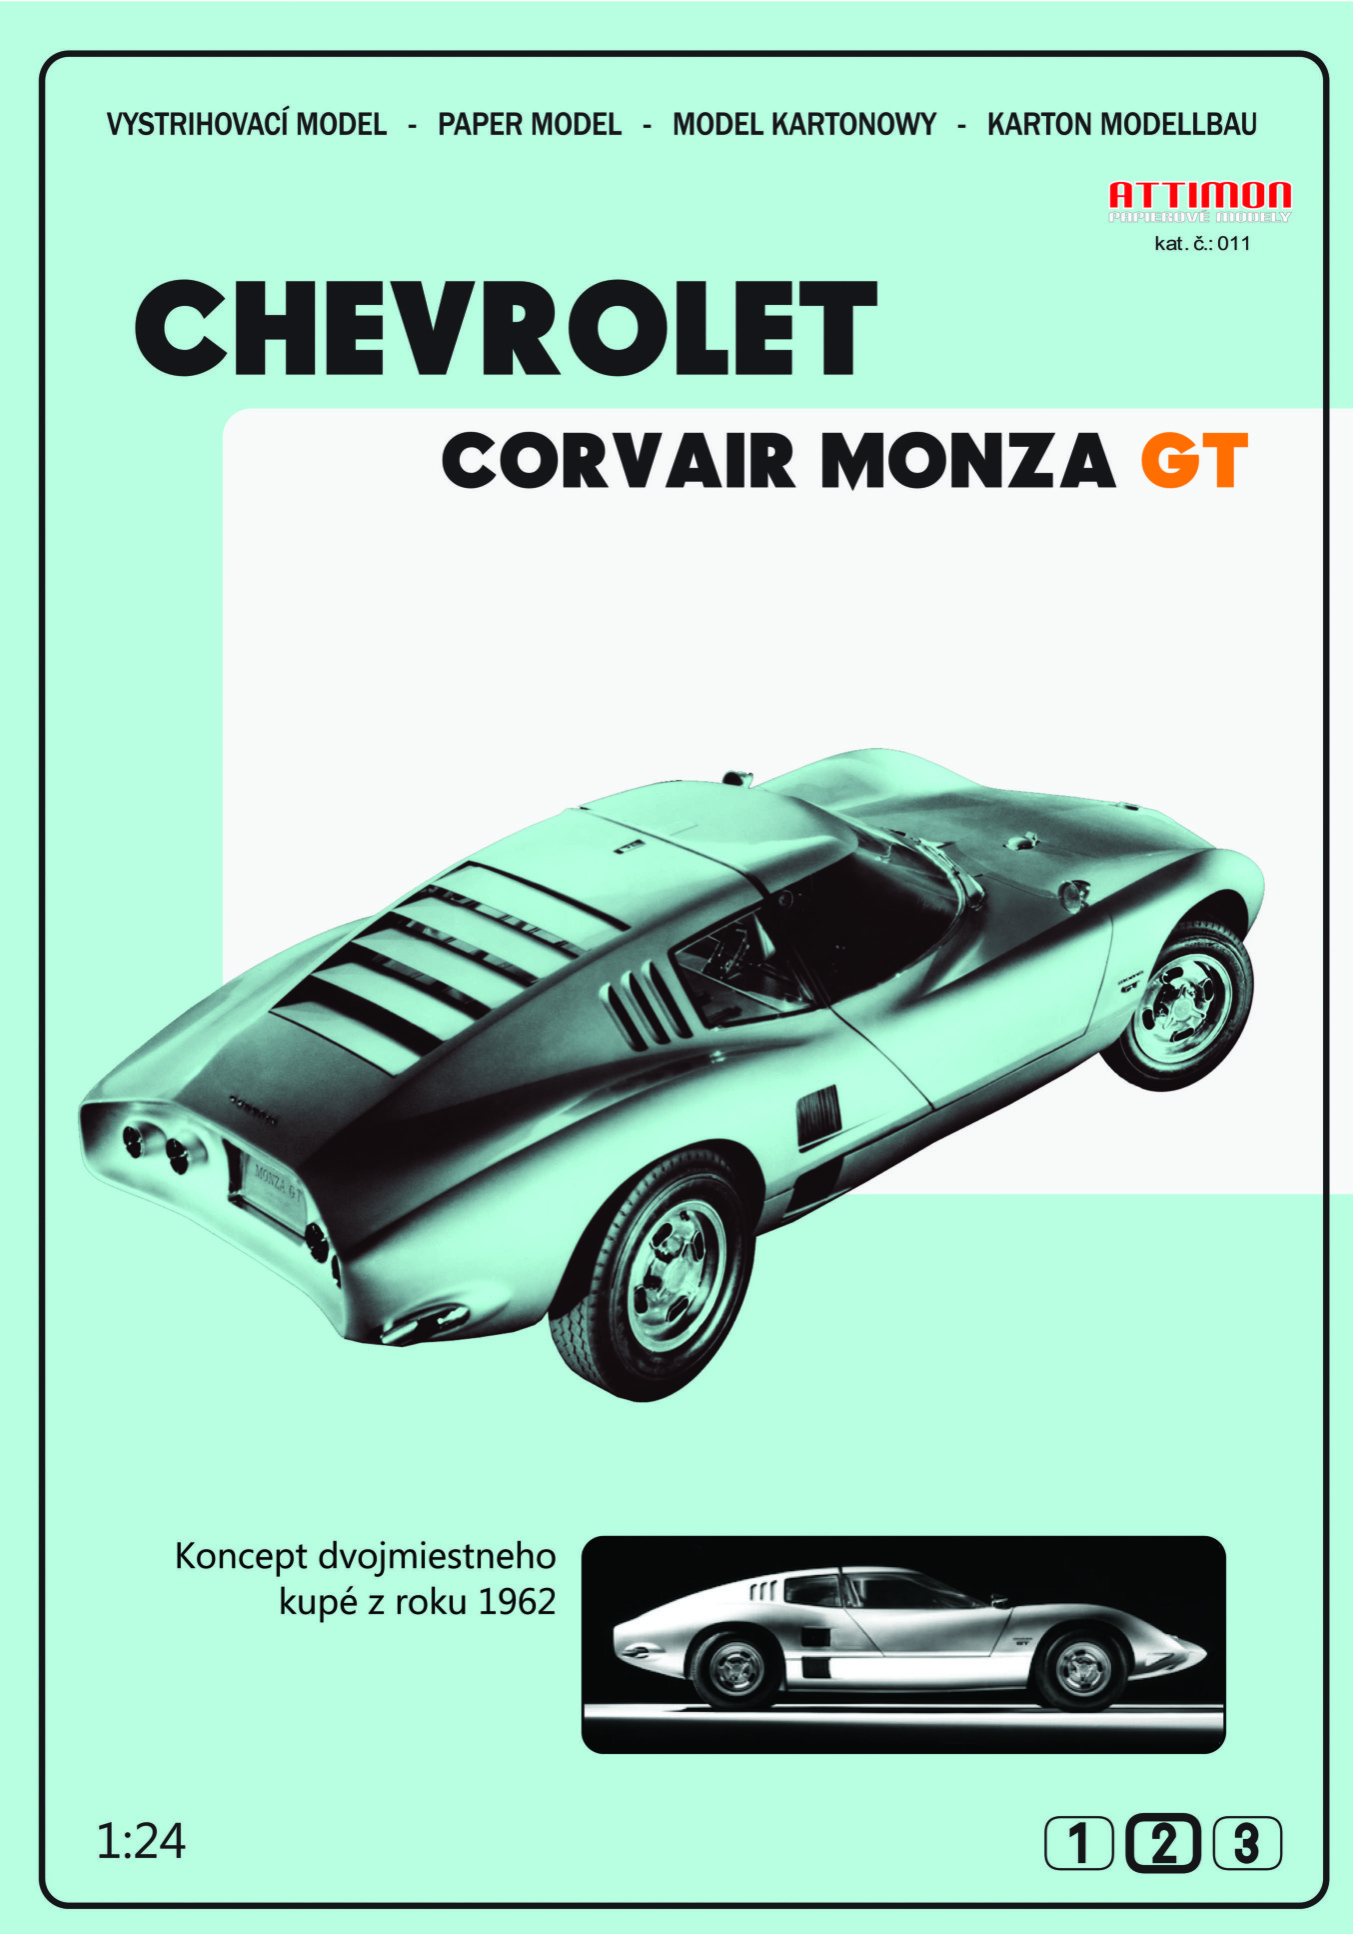 Chevrolet Corvair Monza GT